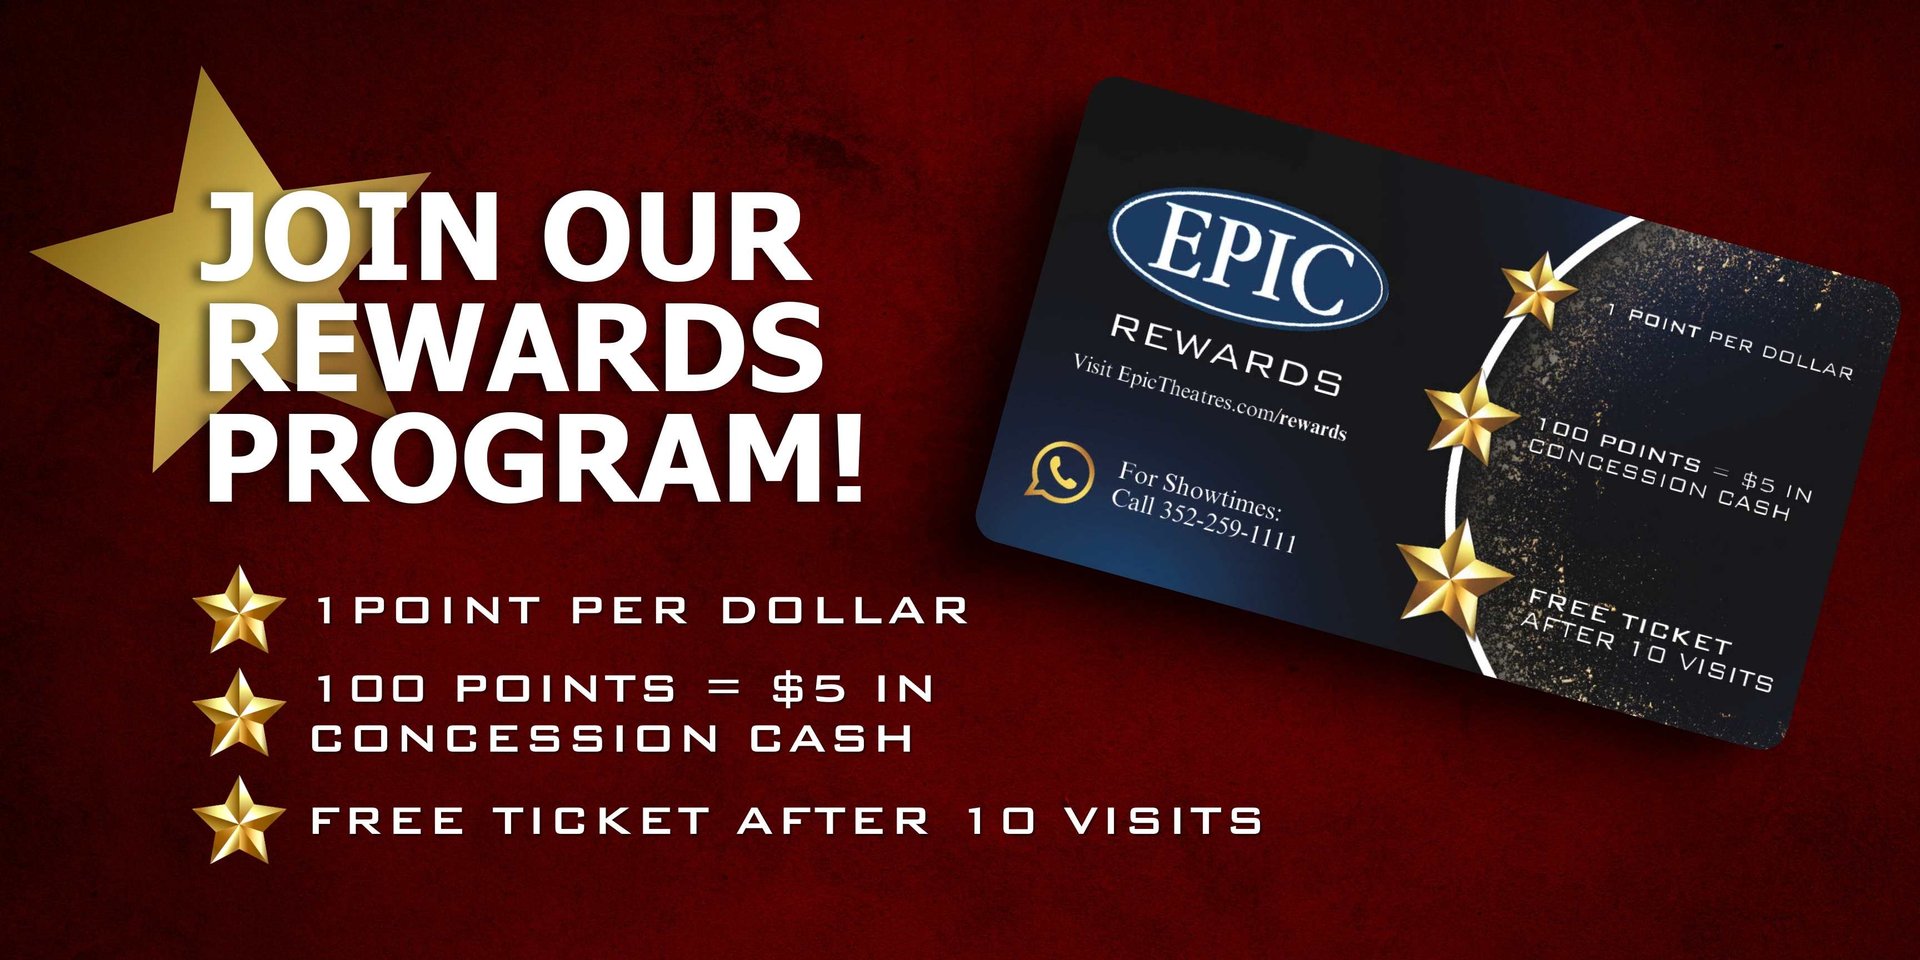 epic theatres rewards program